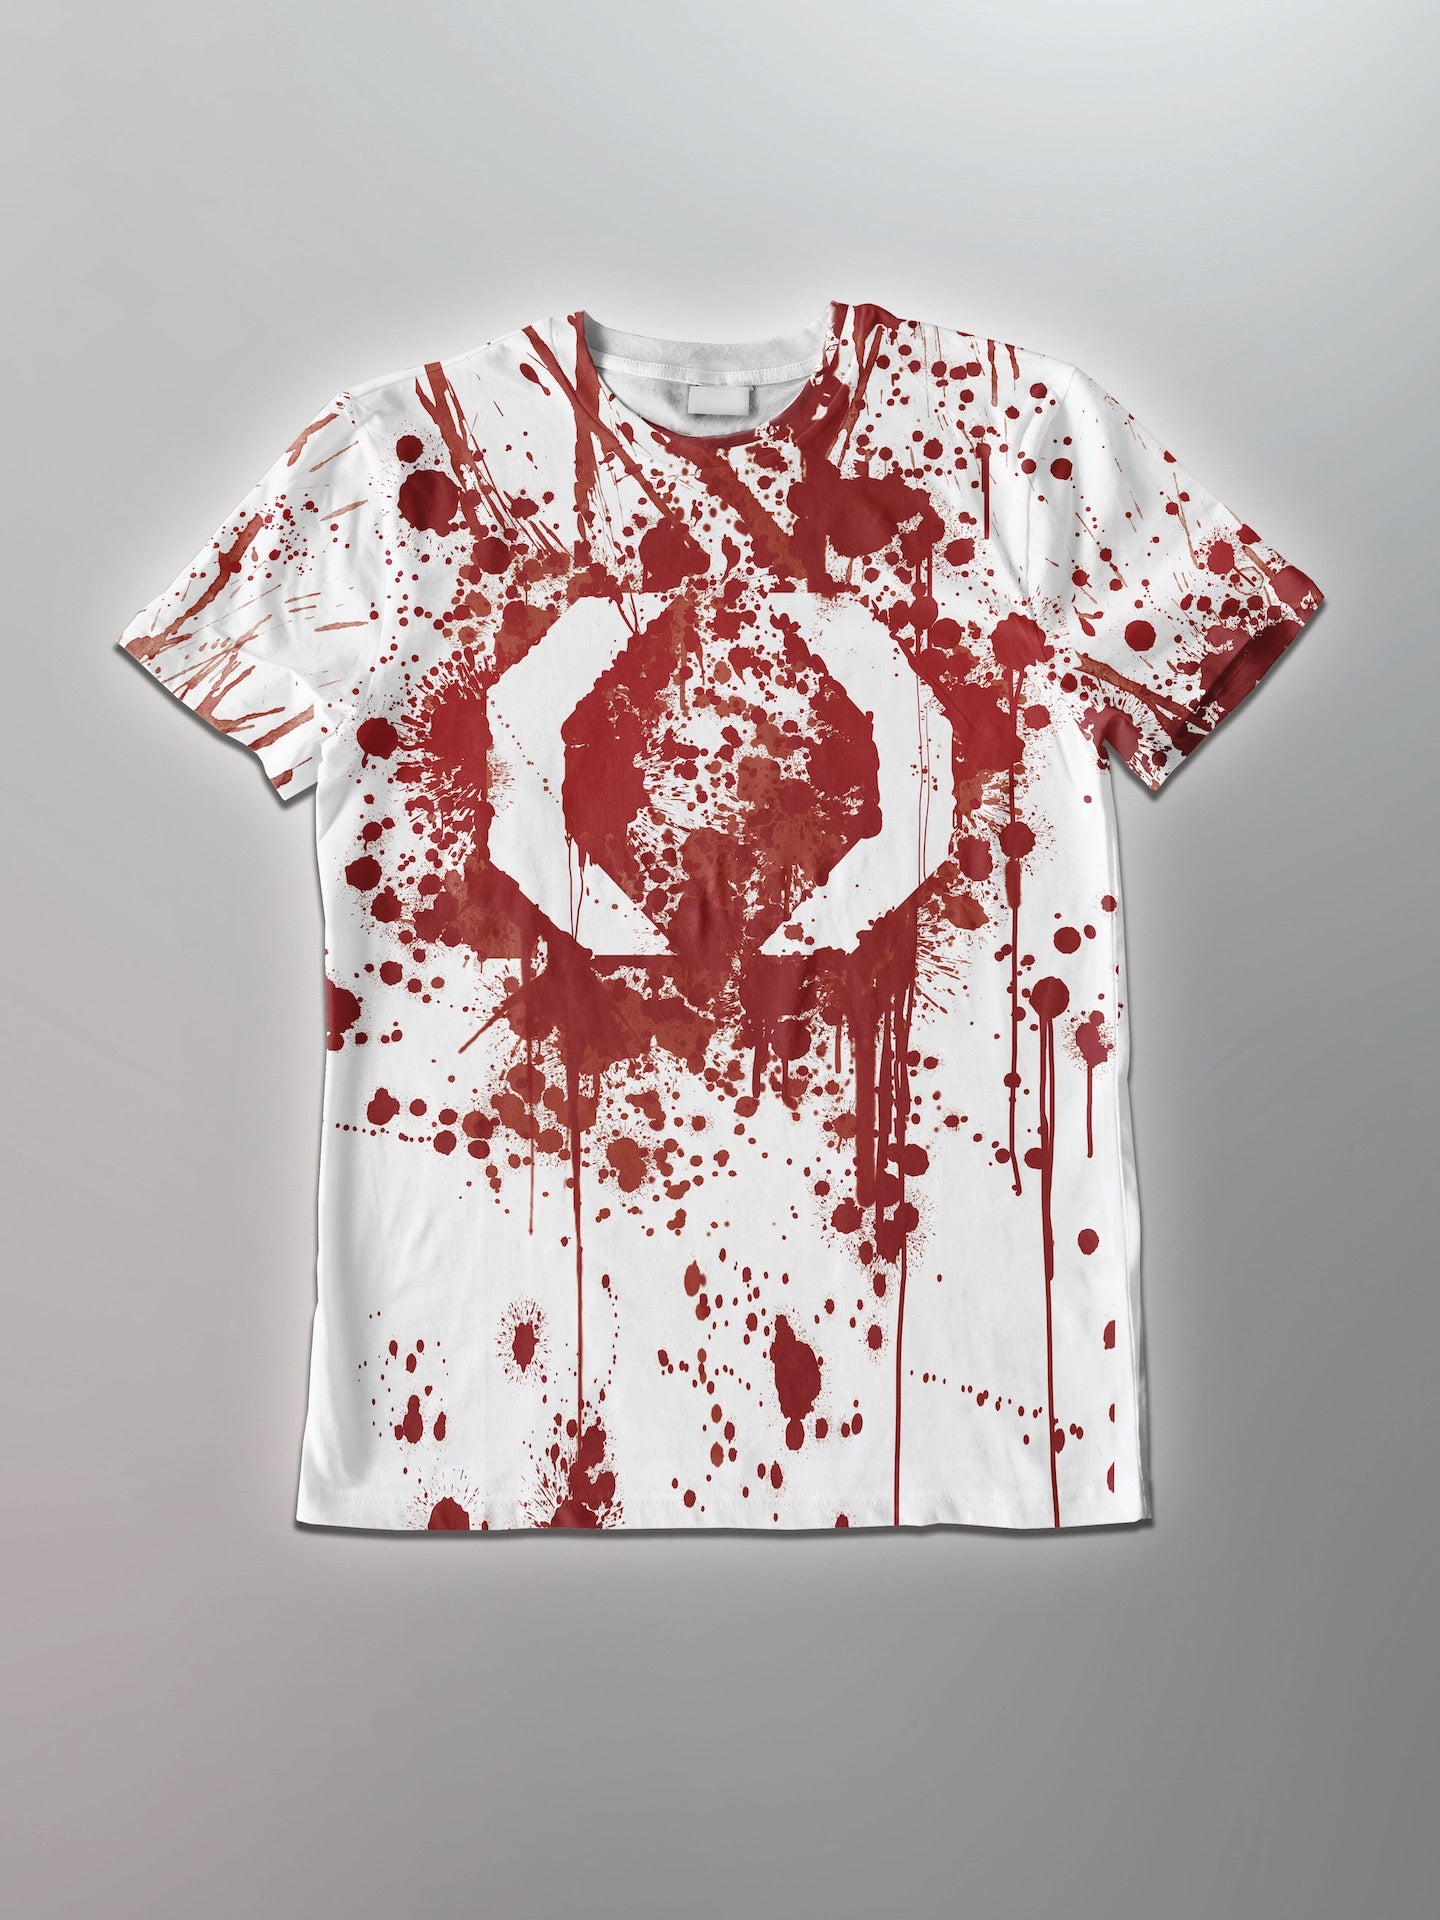 Celldweller - Bloodsplatter Shirt